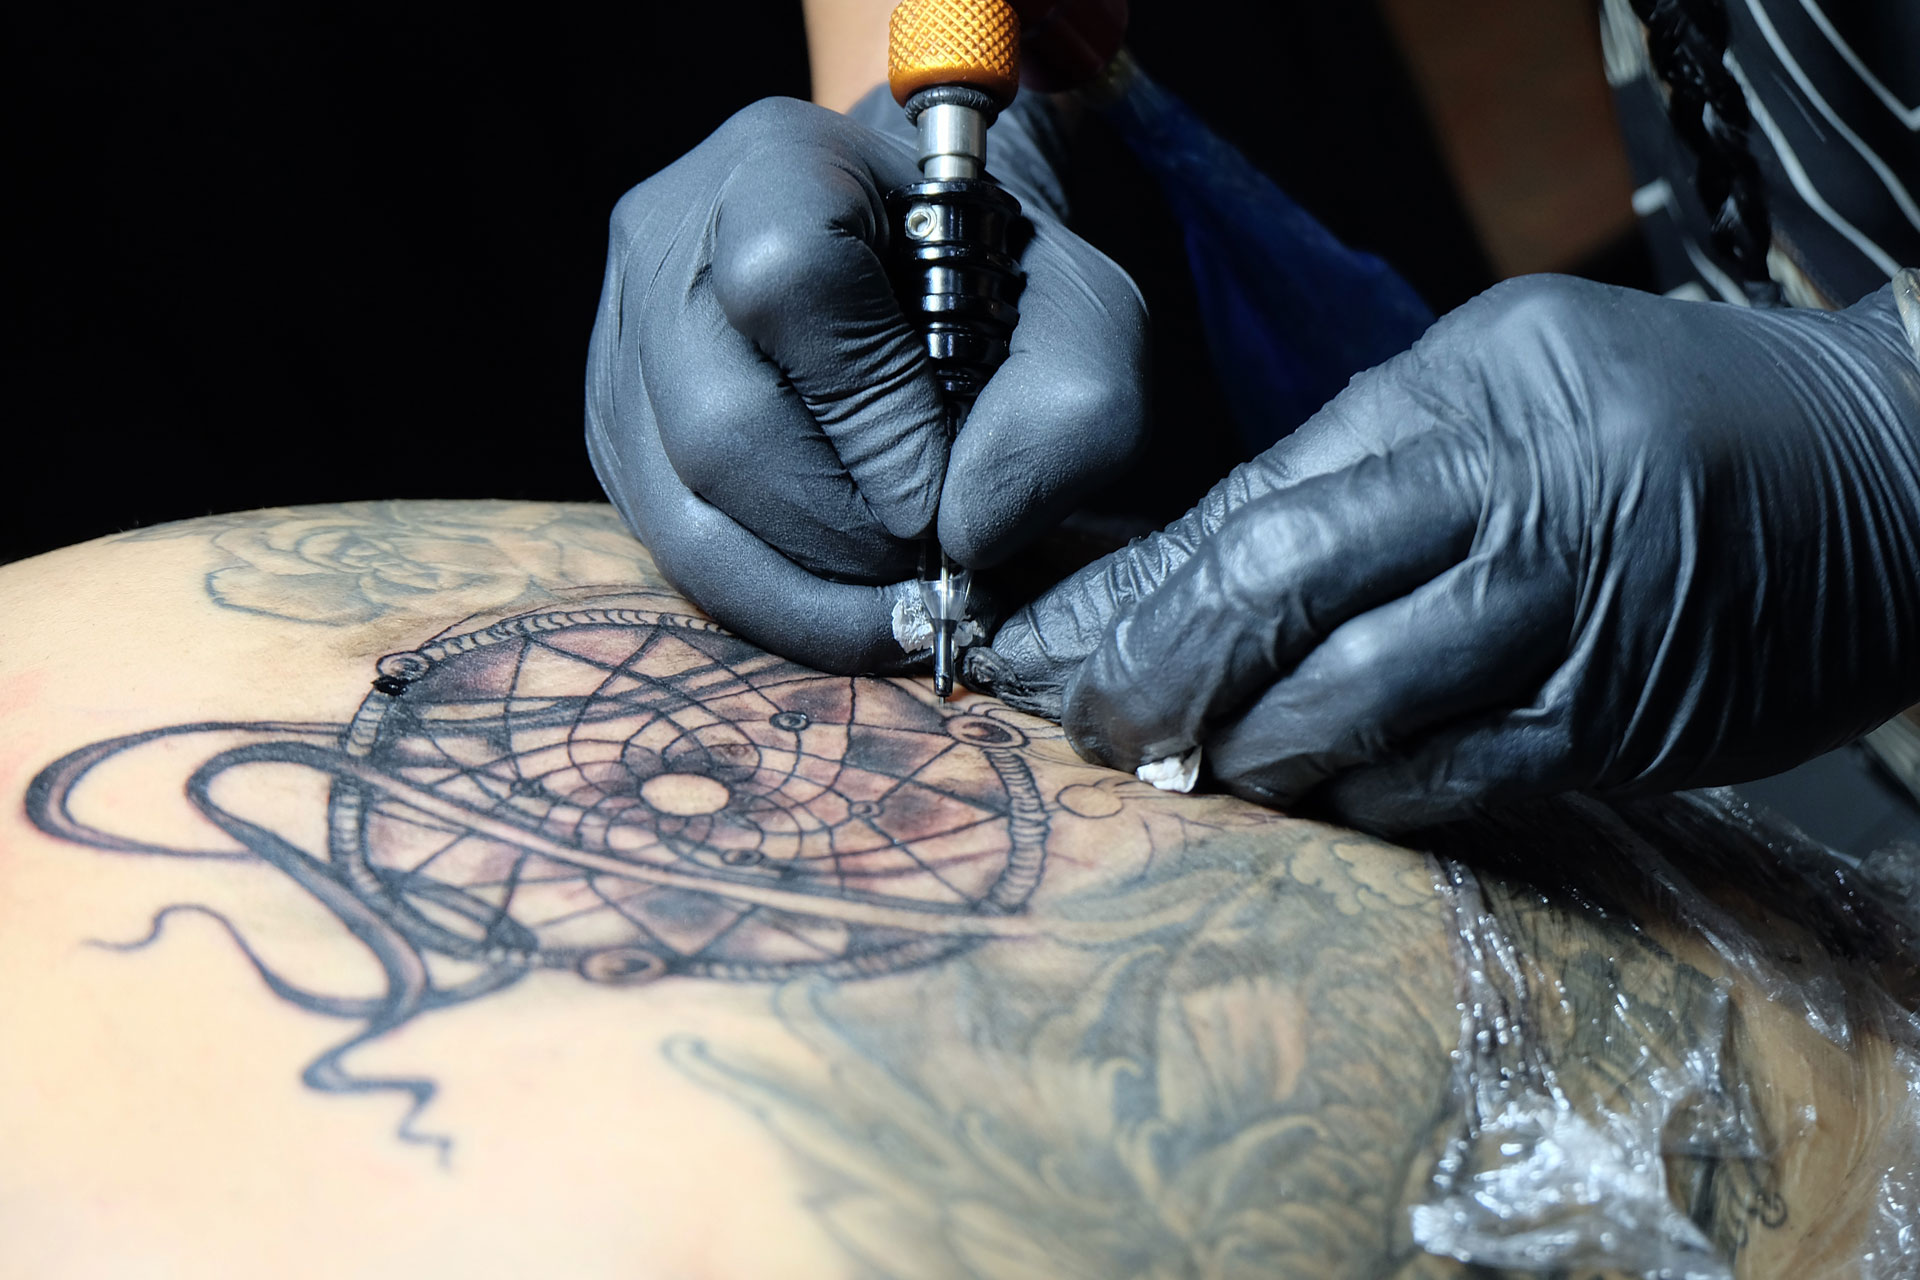 Il significato dei tatuaggi: l'acchiappasogni